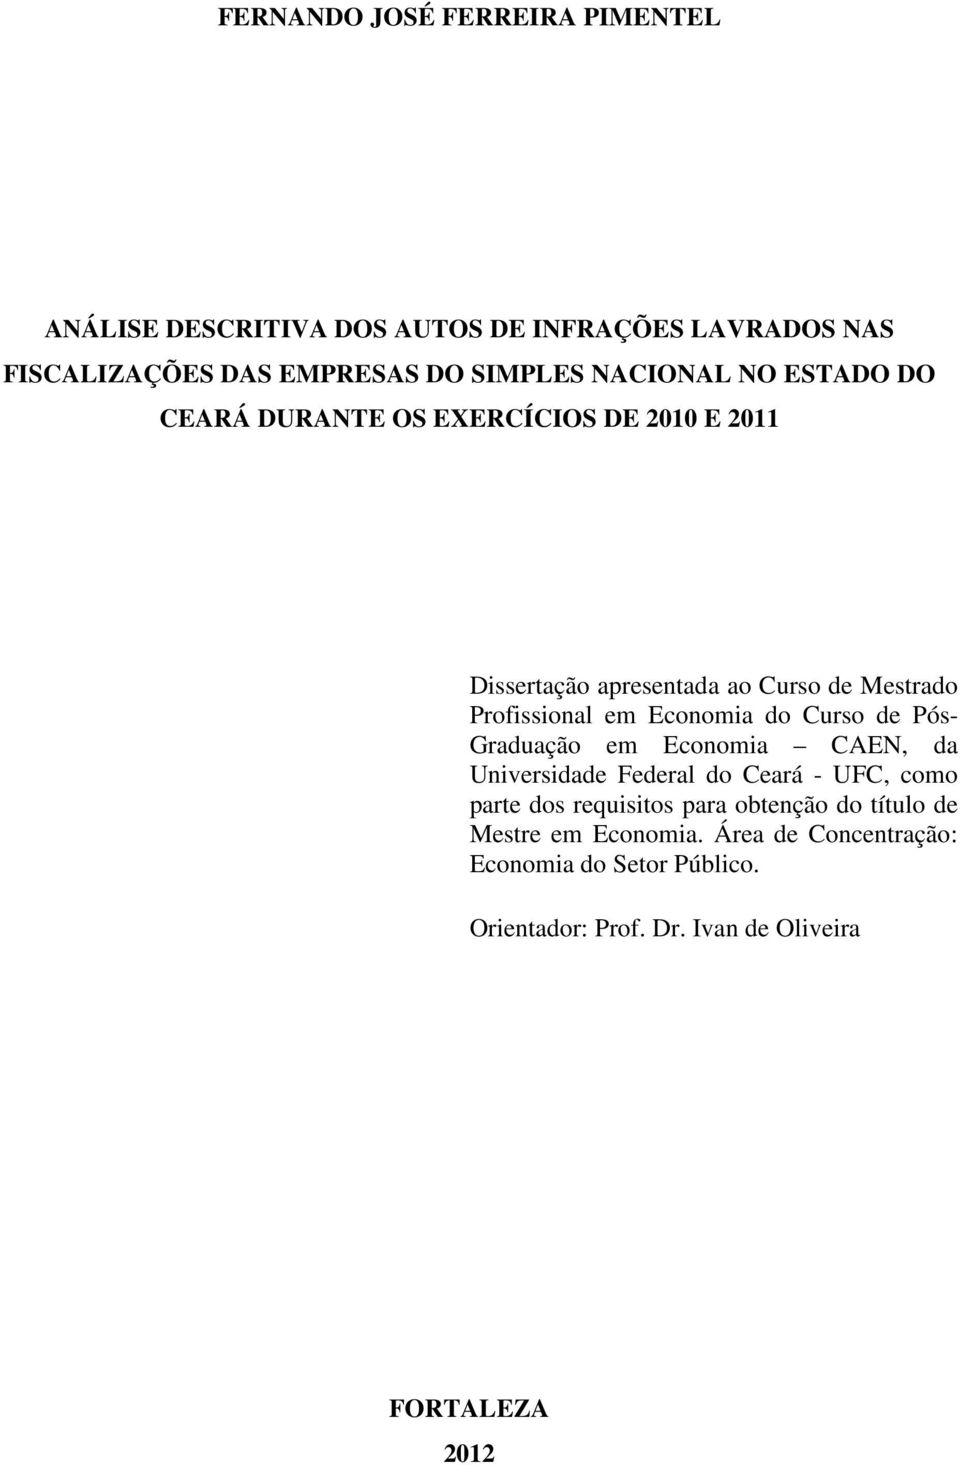 Economia do Curso de Pós- Graduação em Economia CAEN, da Universidade Federal do Ceará - UFC, como parte dos requisitos para